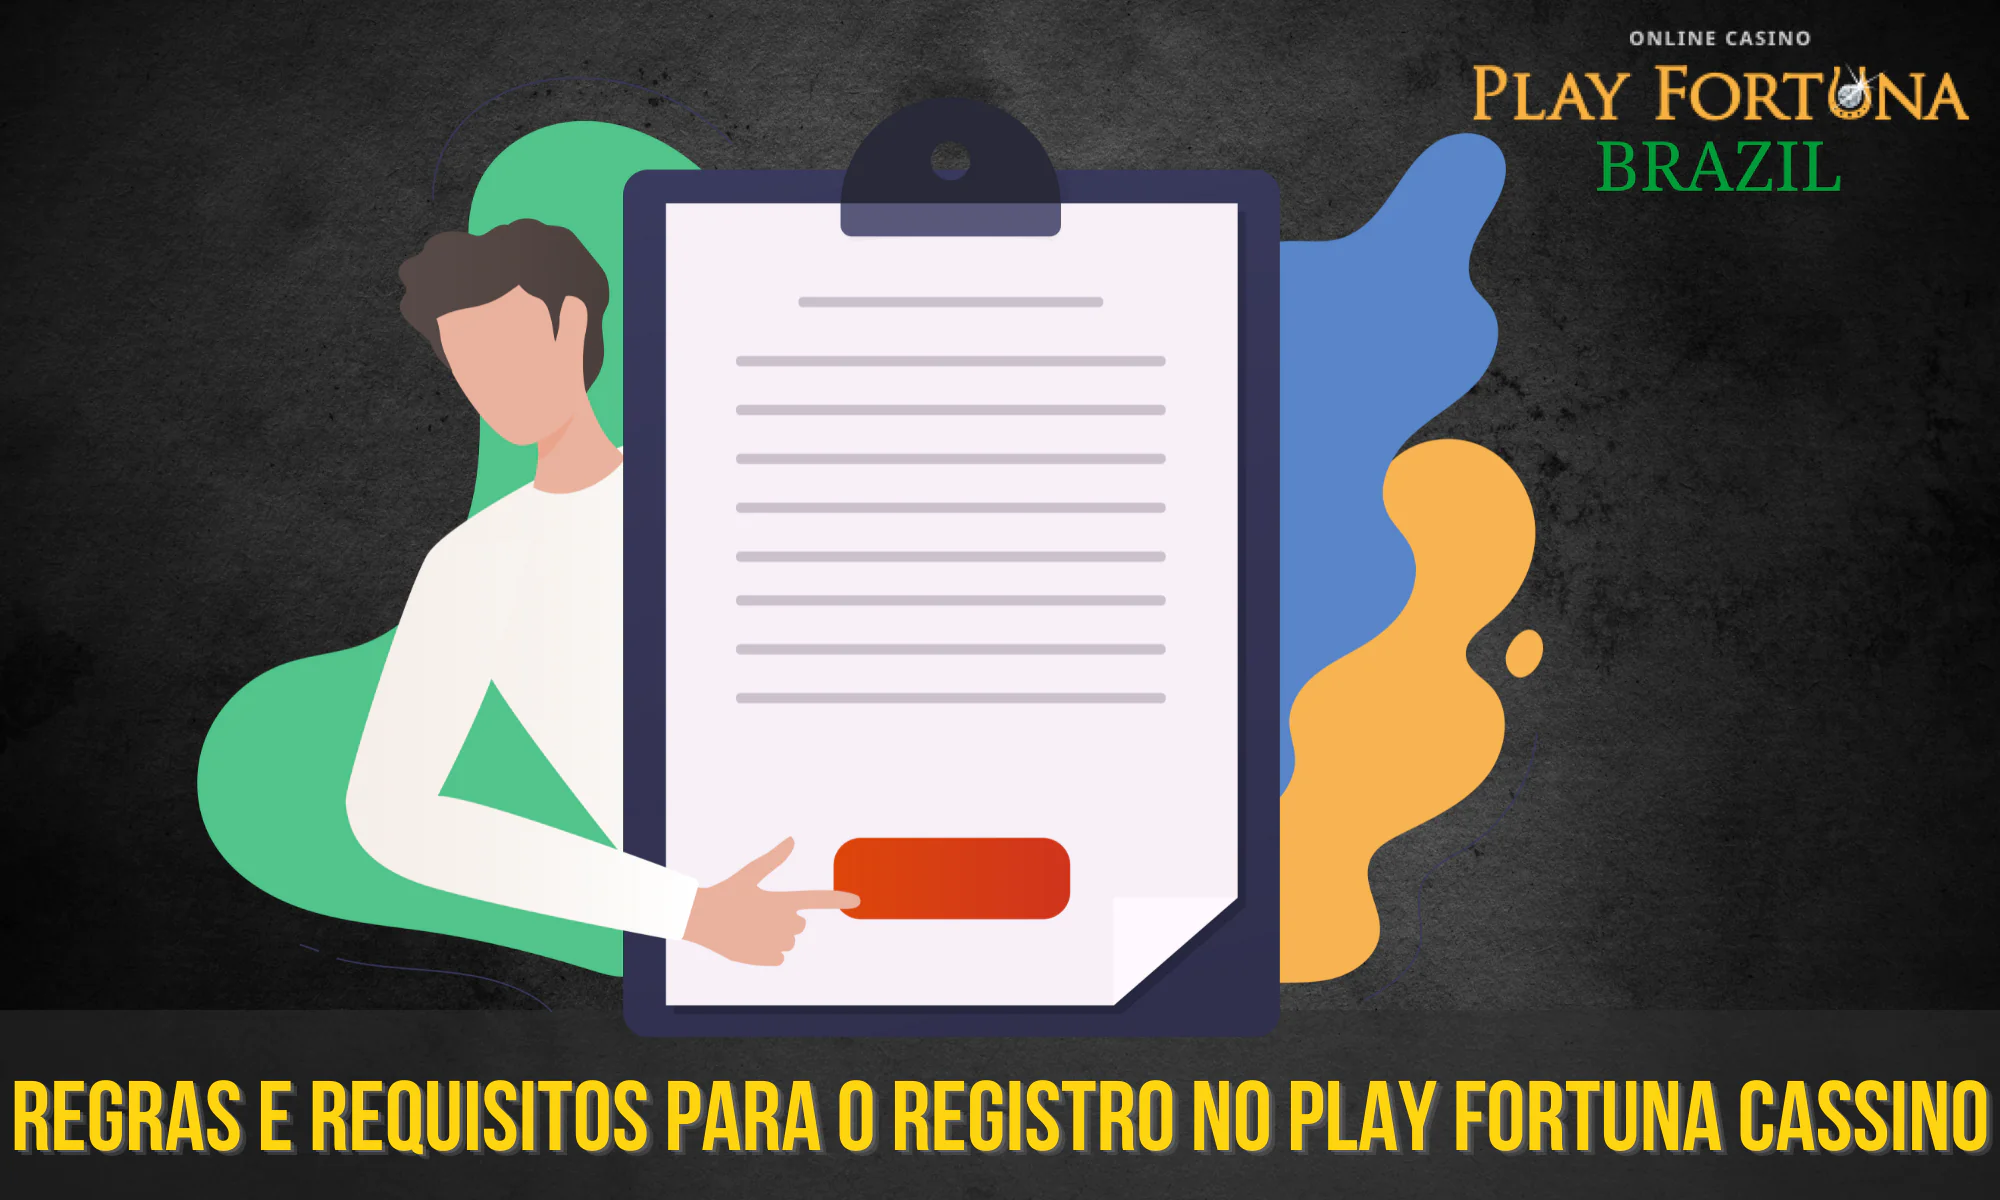 Antes de solicitar o registro no Play Fortuna, é recomendável que você leia os termos e condições básicos